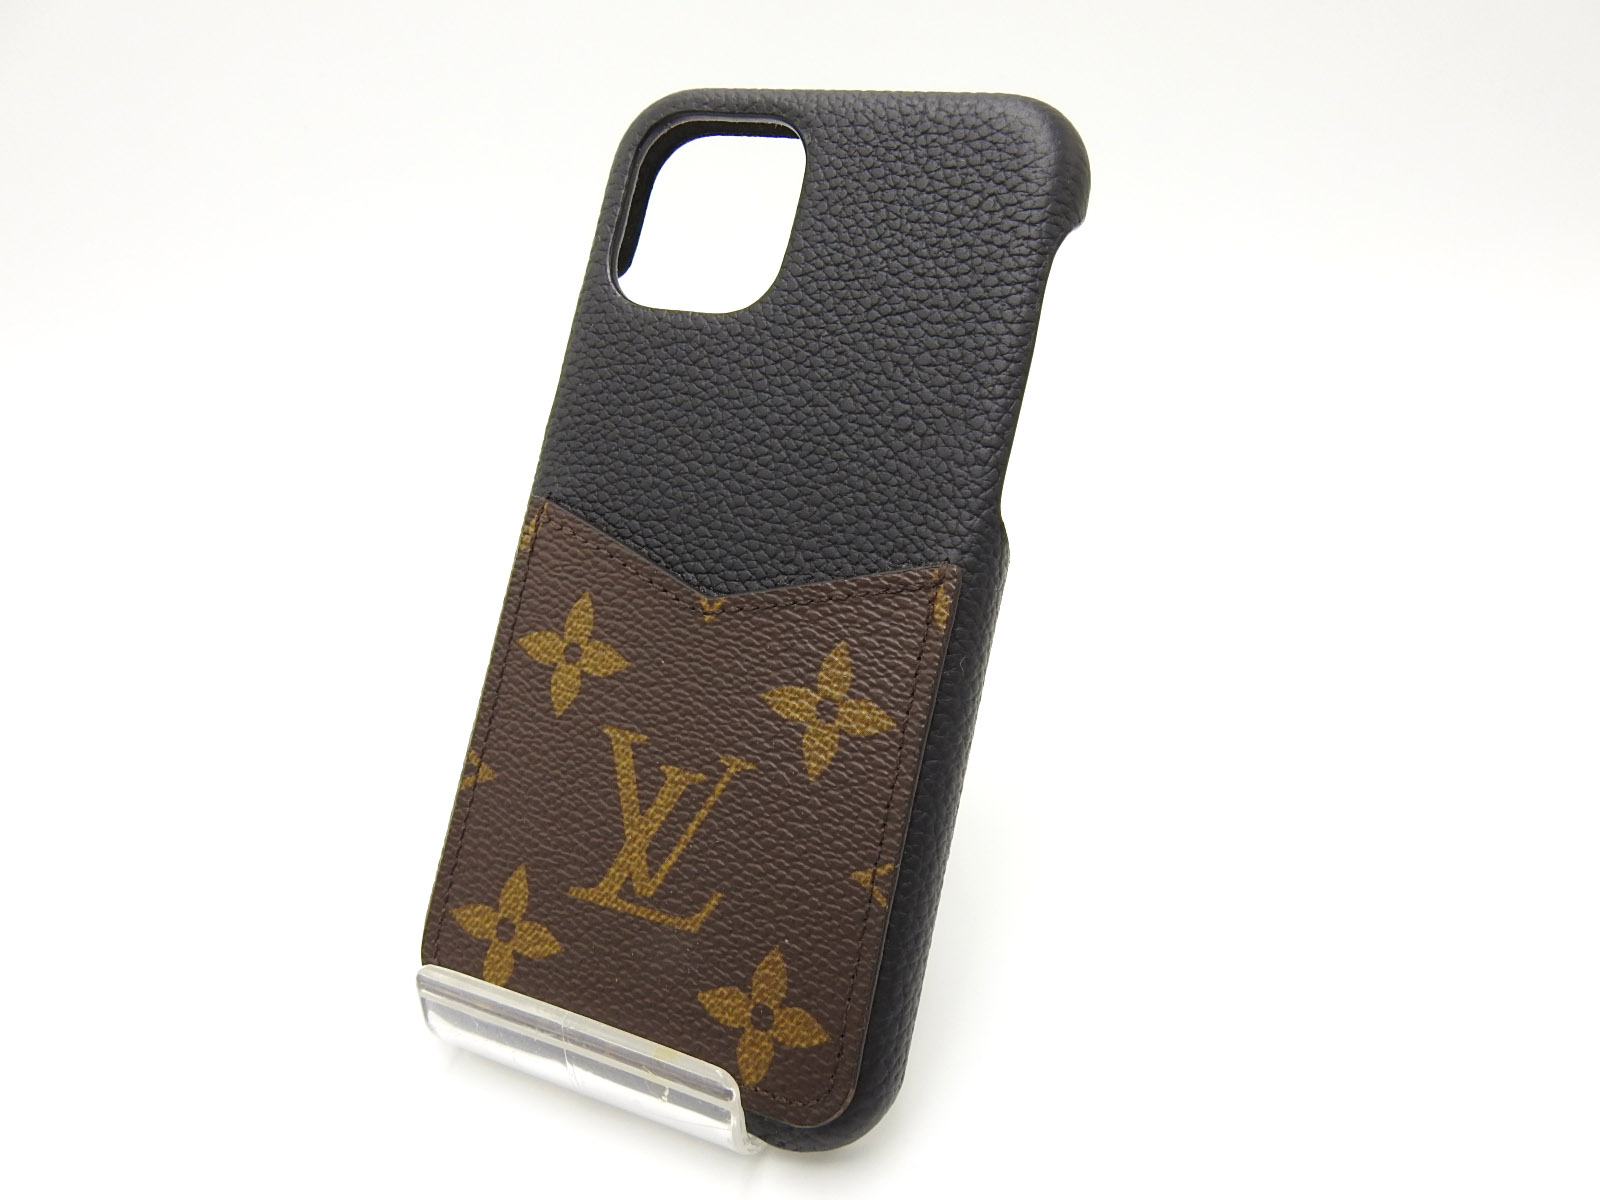 Iphone 11 Pro Bumper Case Louis Vuitton Case Brief